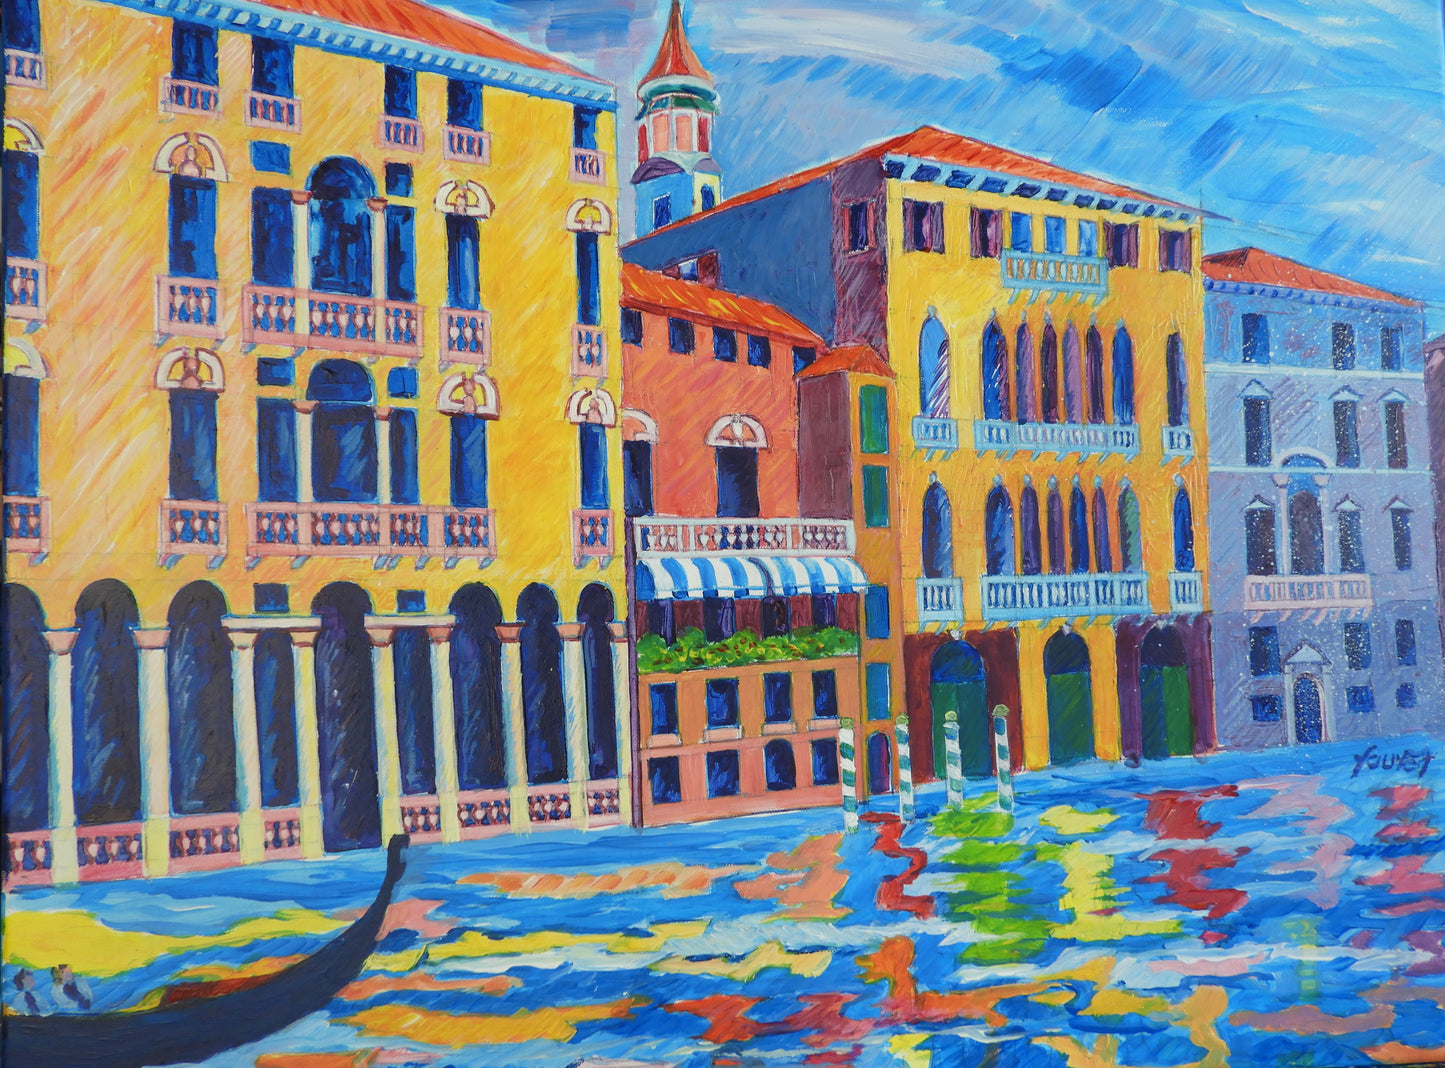 Le grand canal à Venise